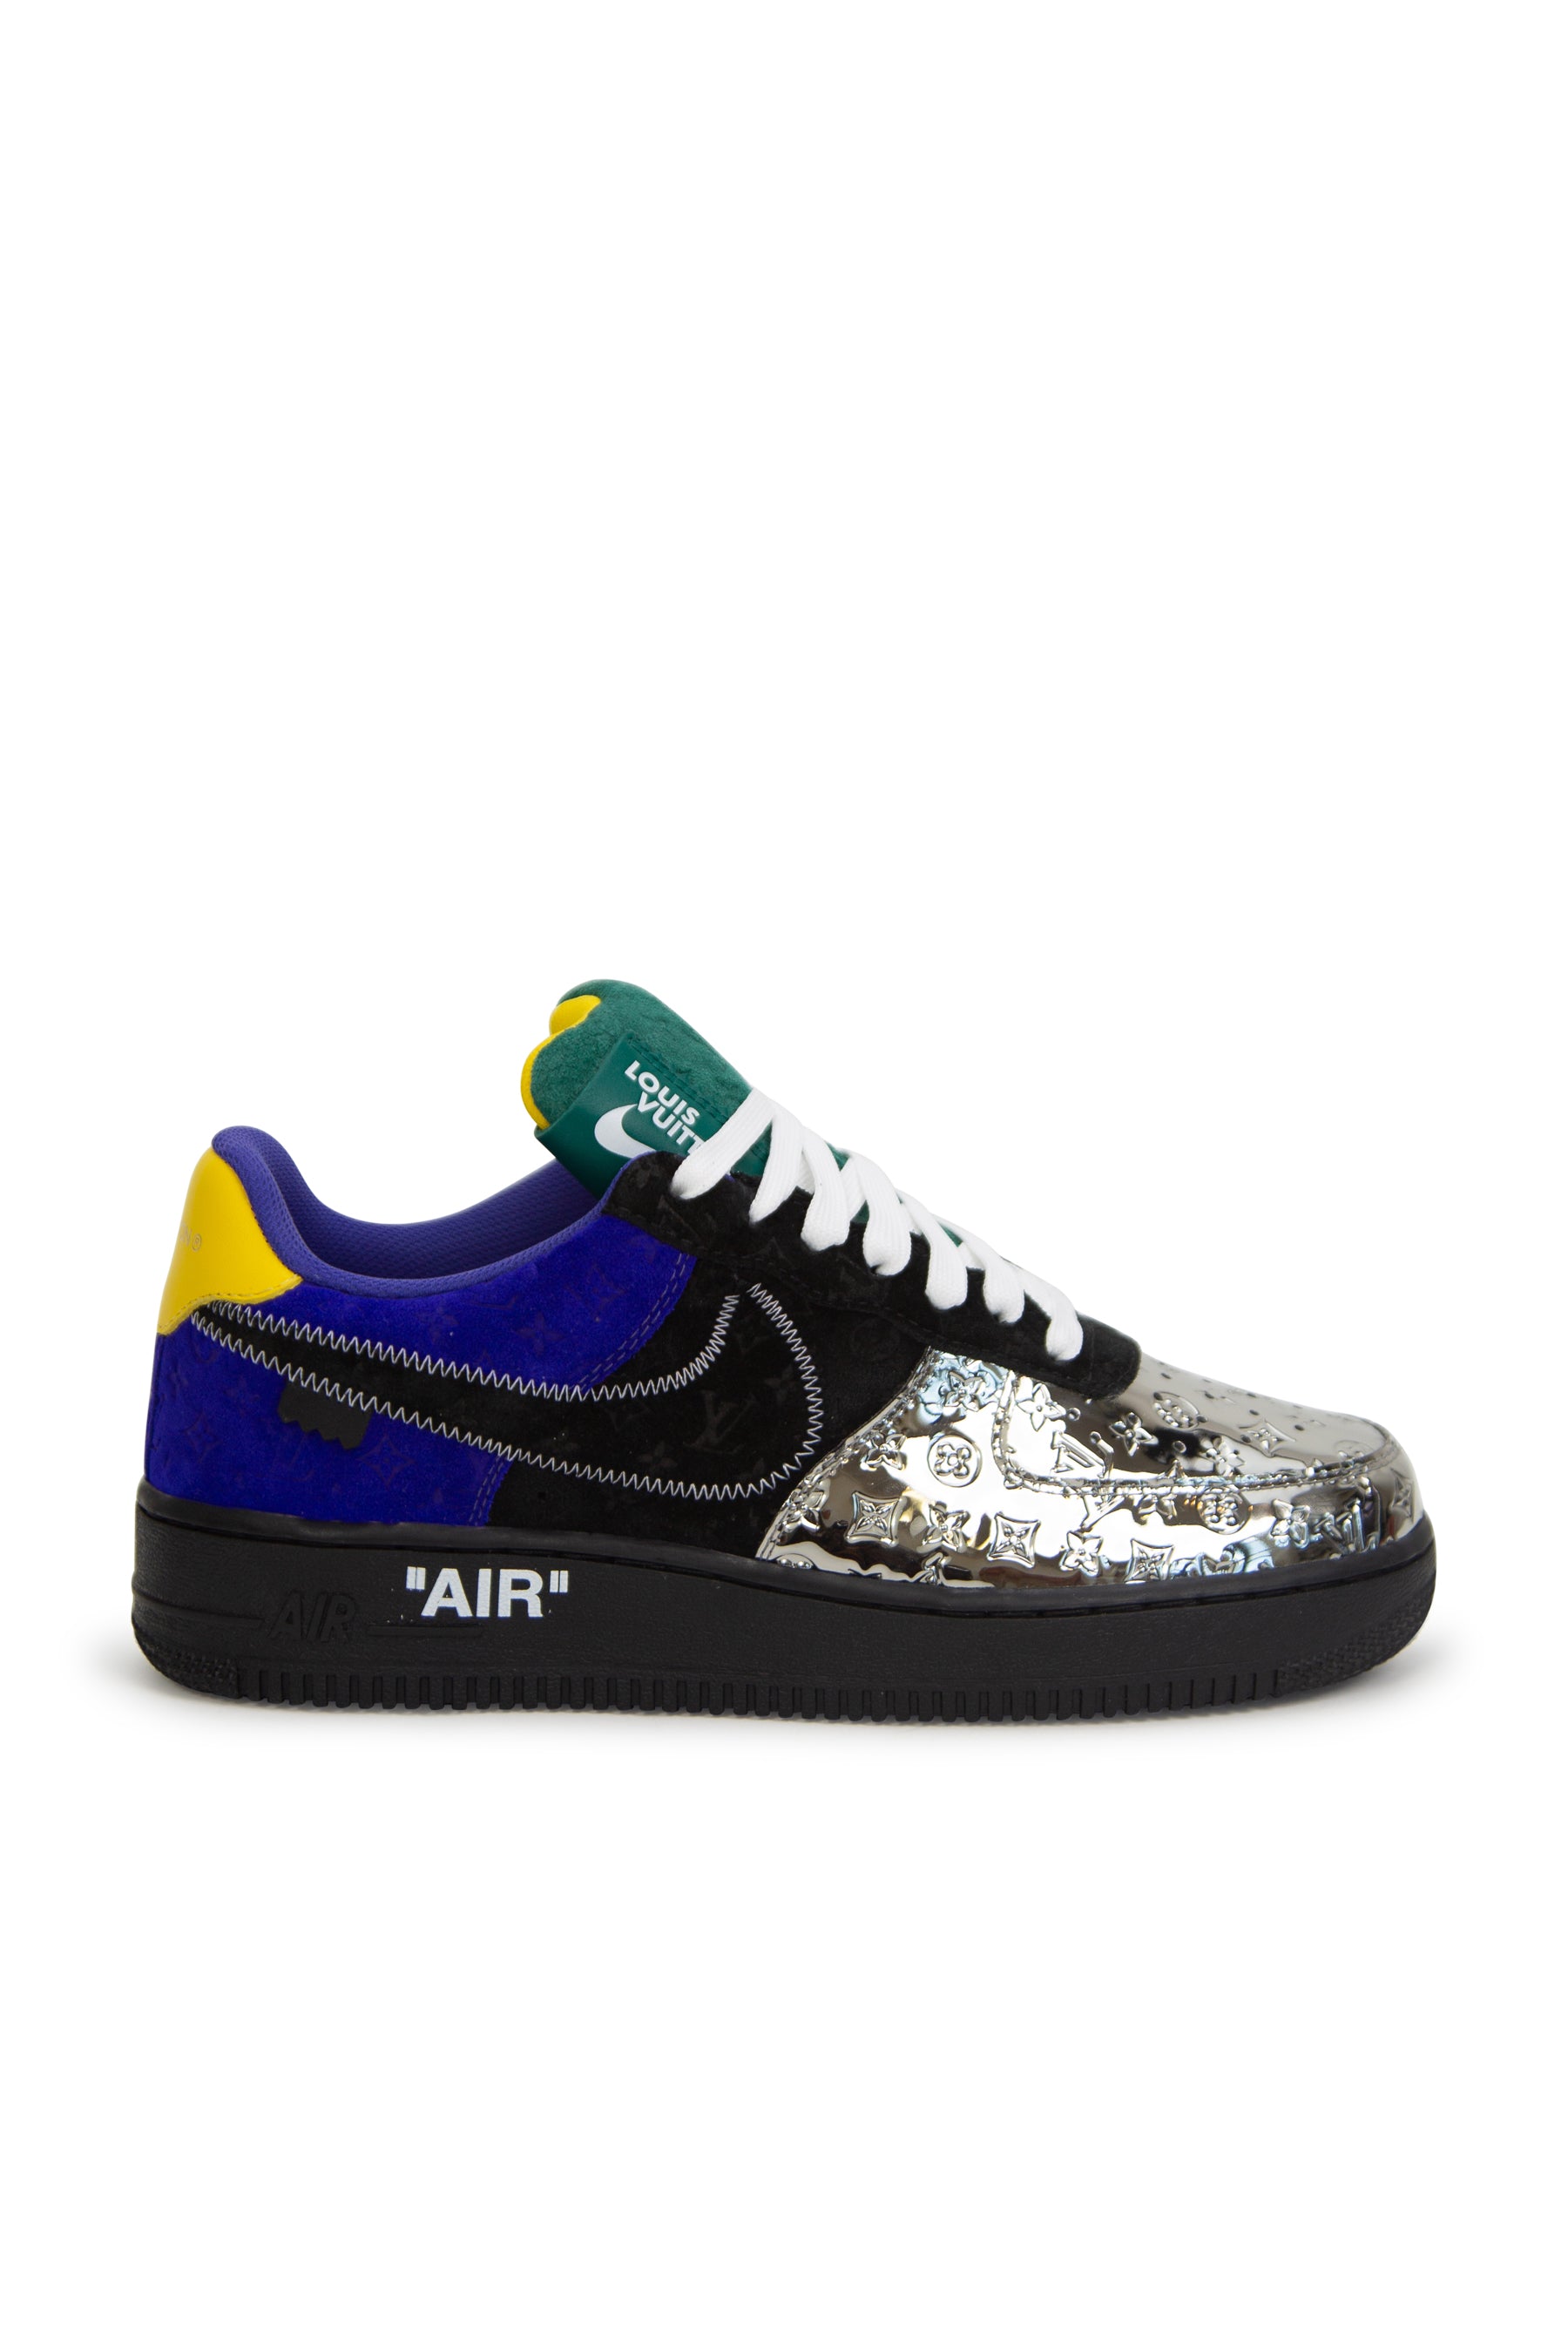 Louis Vuitton x Nike Air Force 1 Sneaker